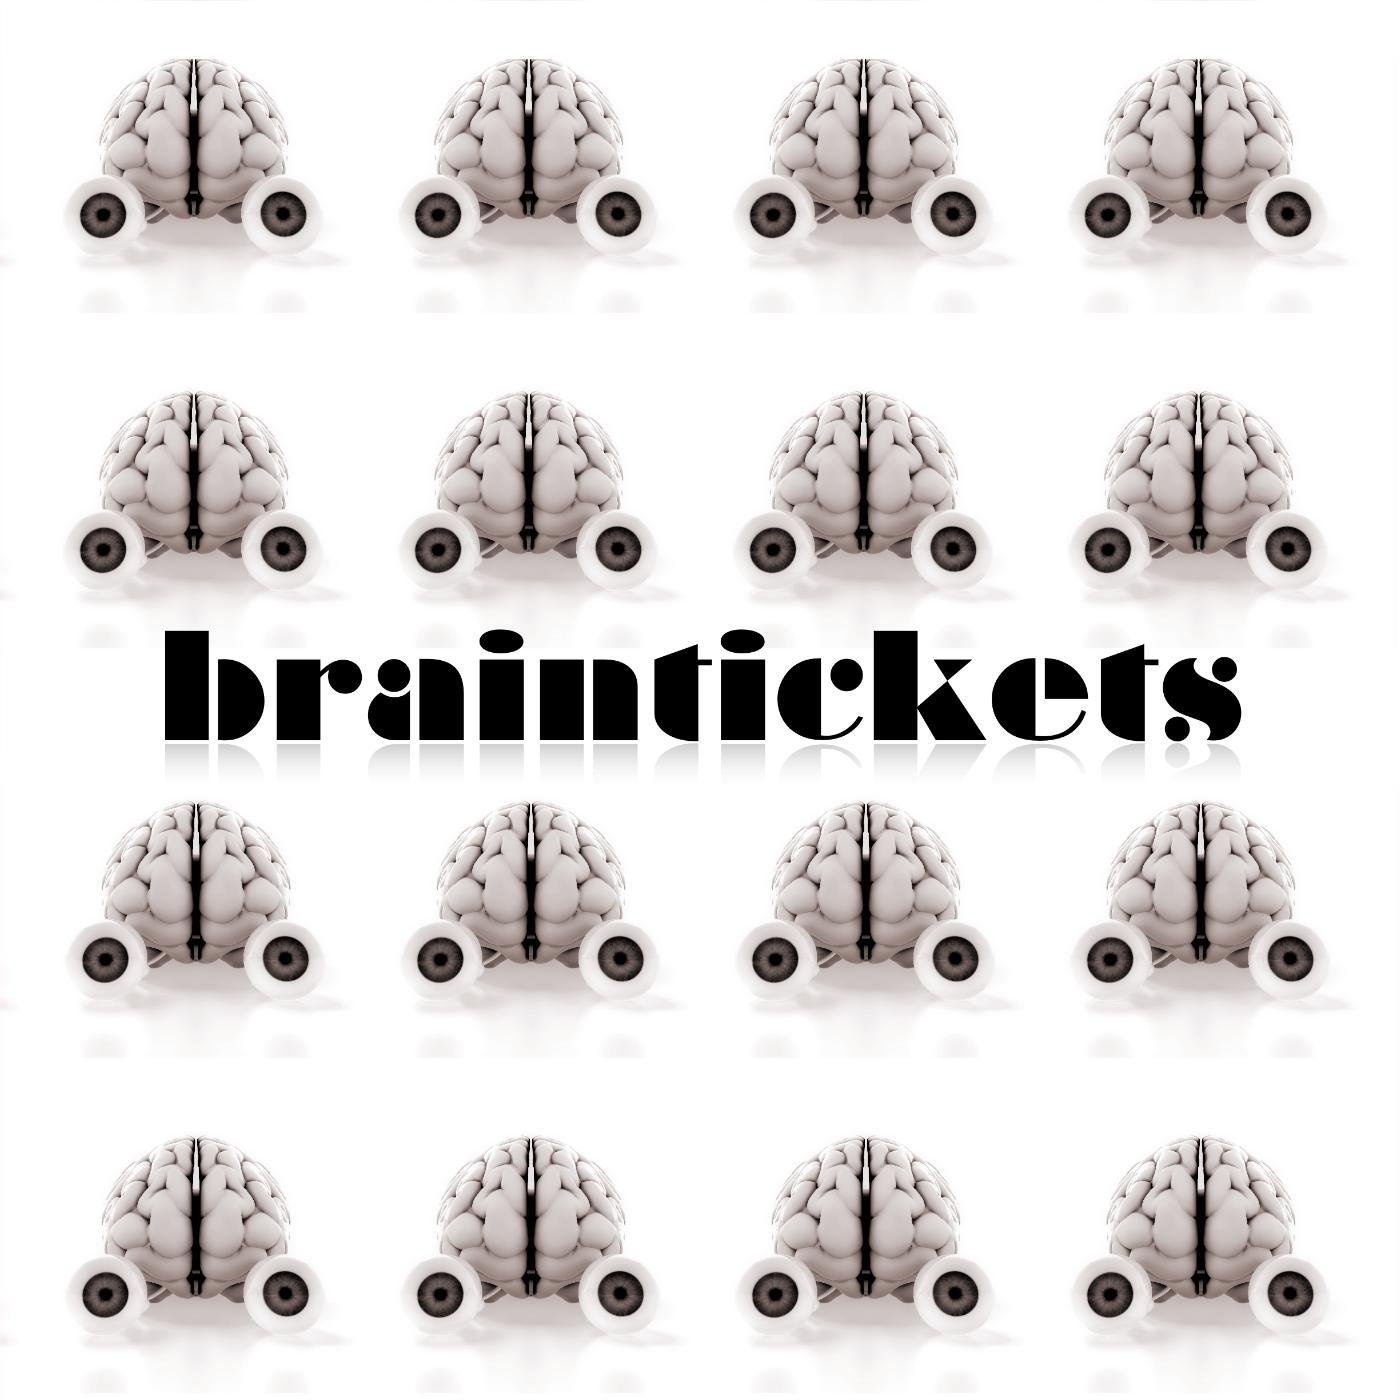 Braintickets